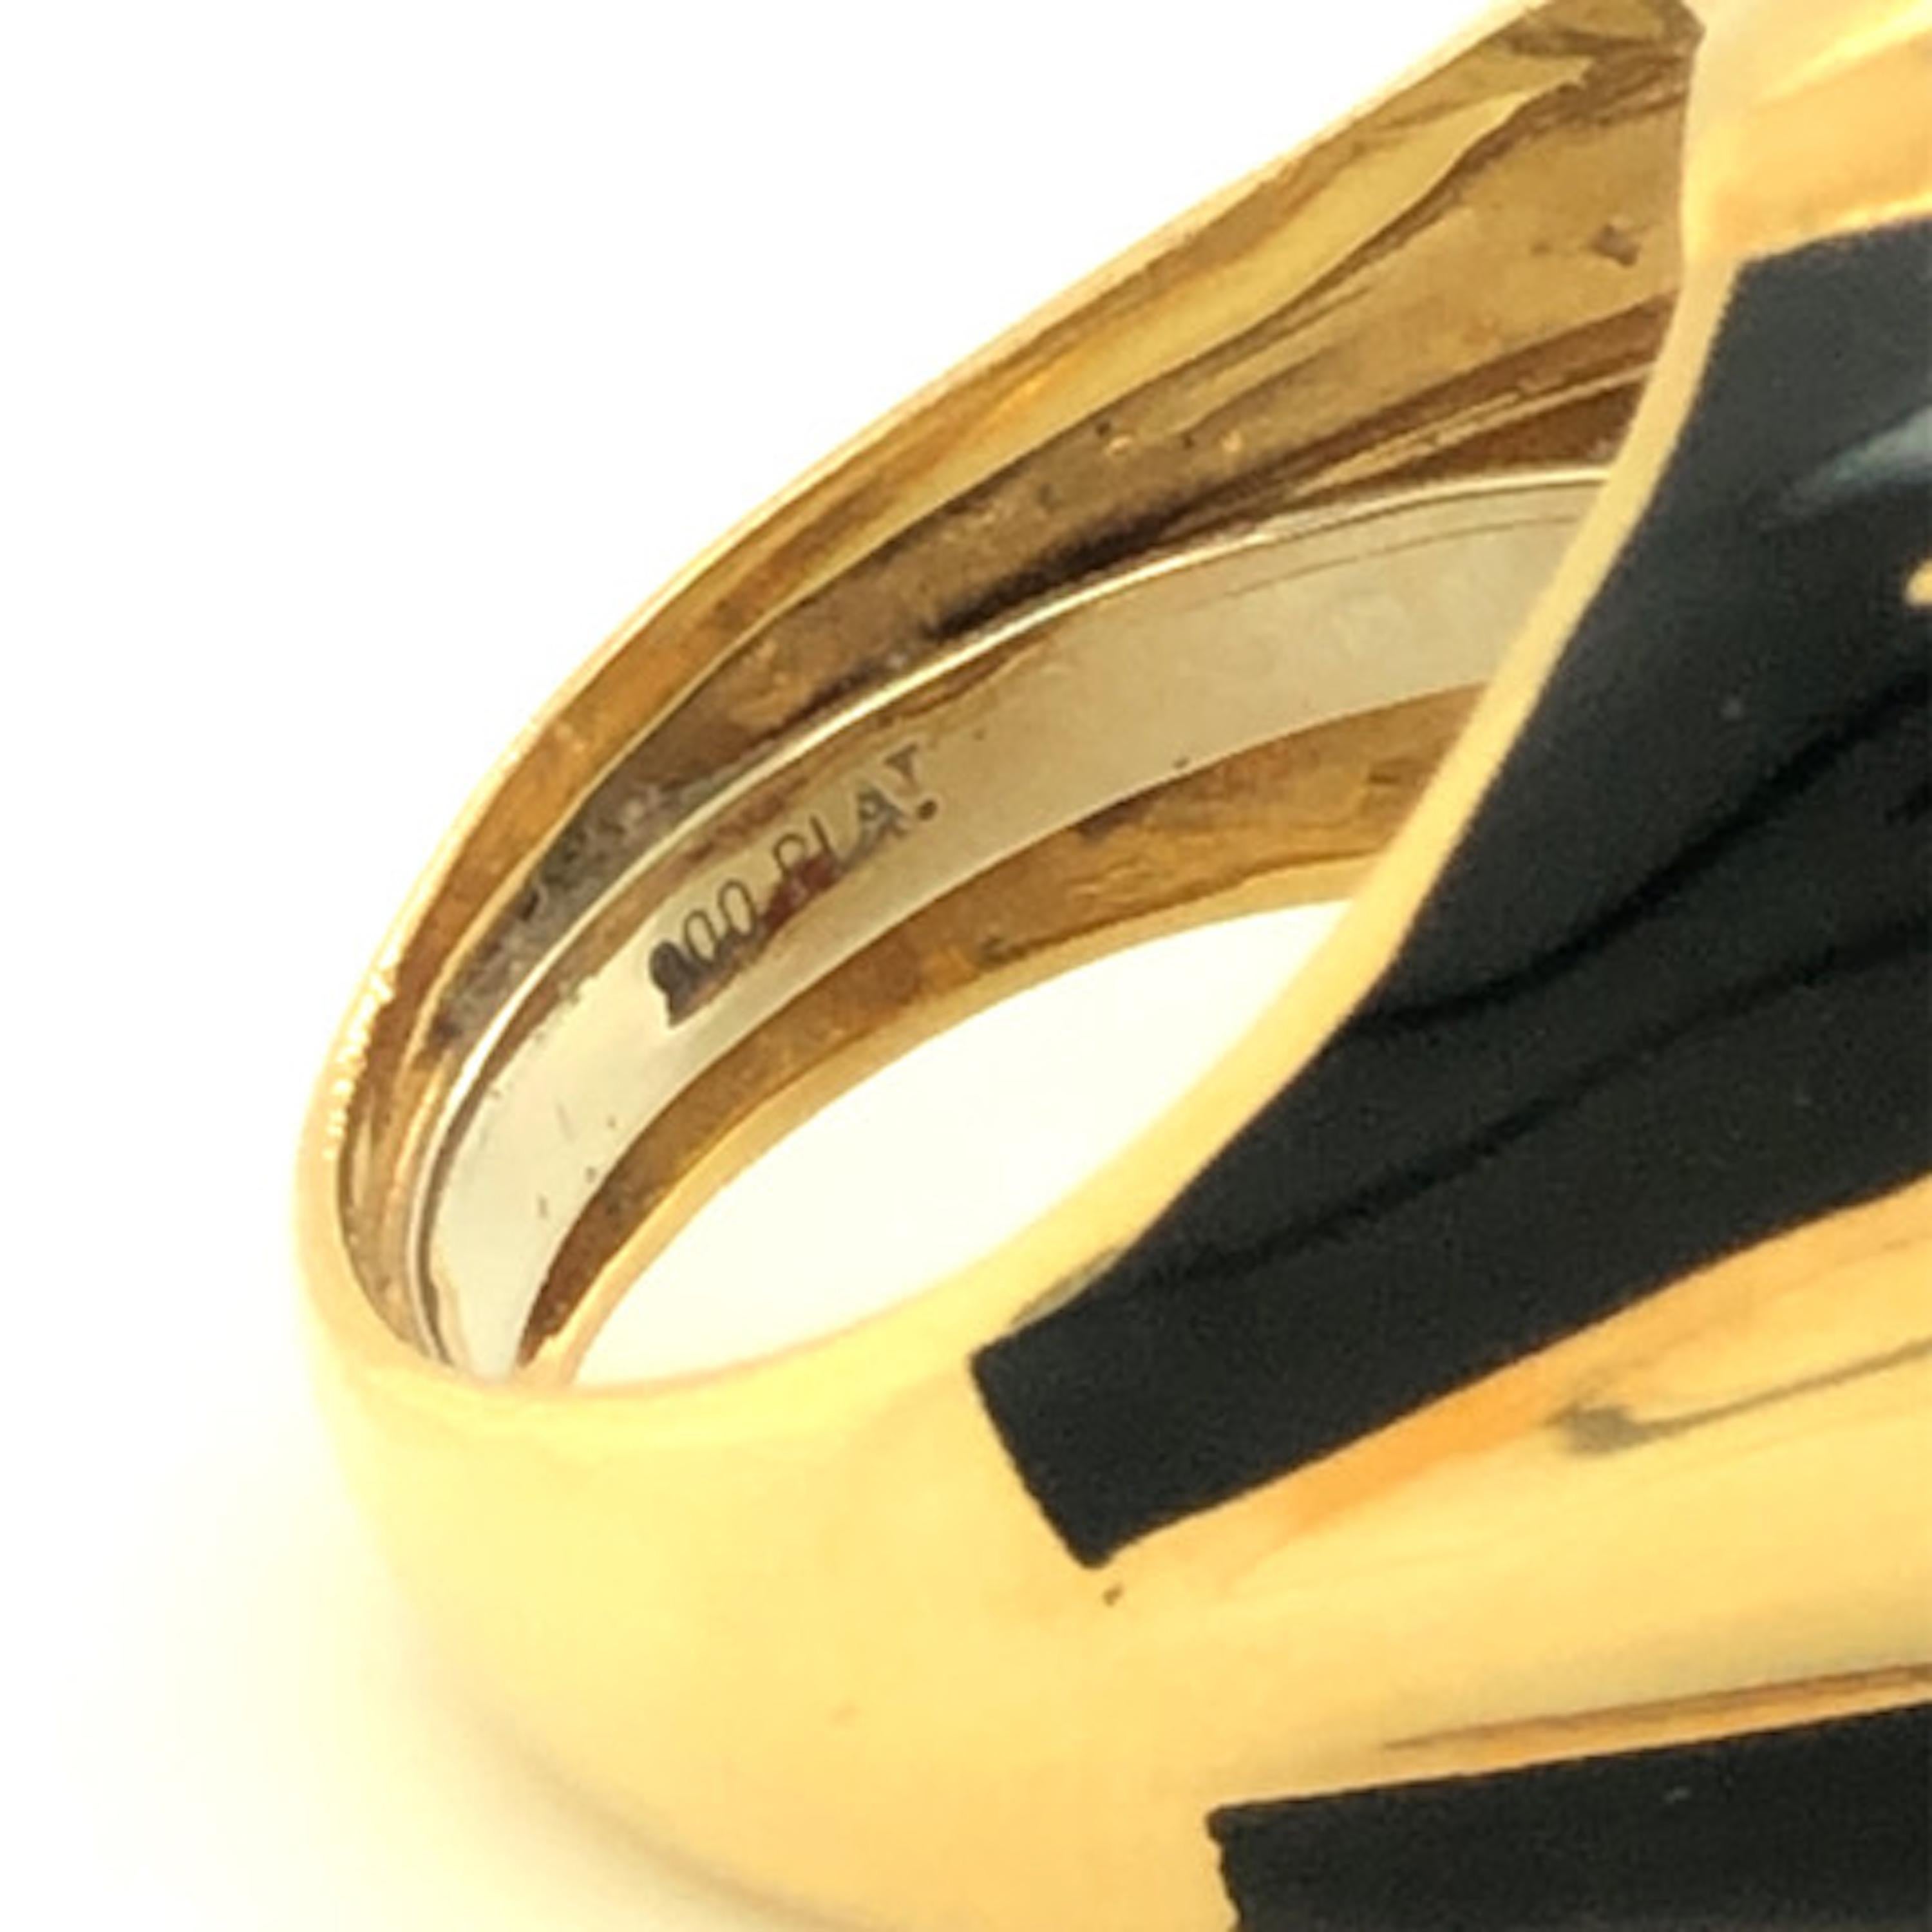 Dieser exquisite Ring von David Webb ist sorgfältig aus einer Kombination von 18 Karat Gold und Platin gefertigt. Es verfügt über atemberaubende Verzierungen, darunter schwarze Emaille, einen Cabochon-Rubin, einen Smaragd, einen Saphir und einen